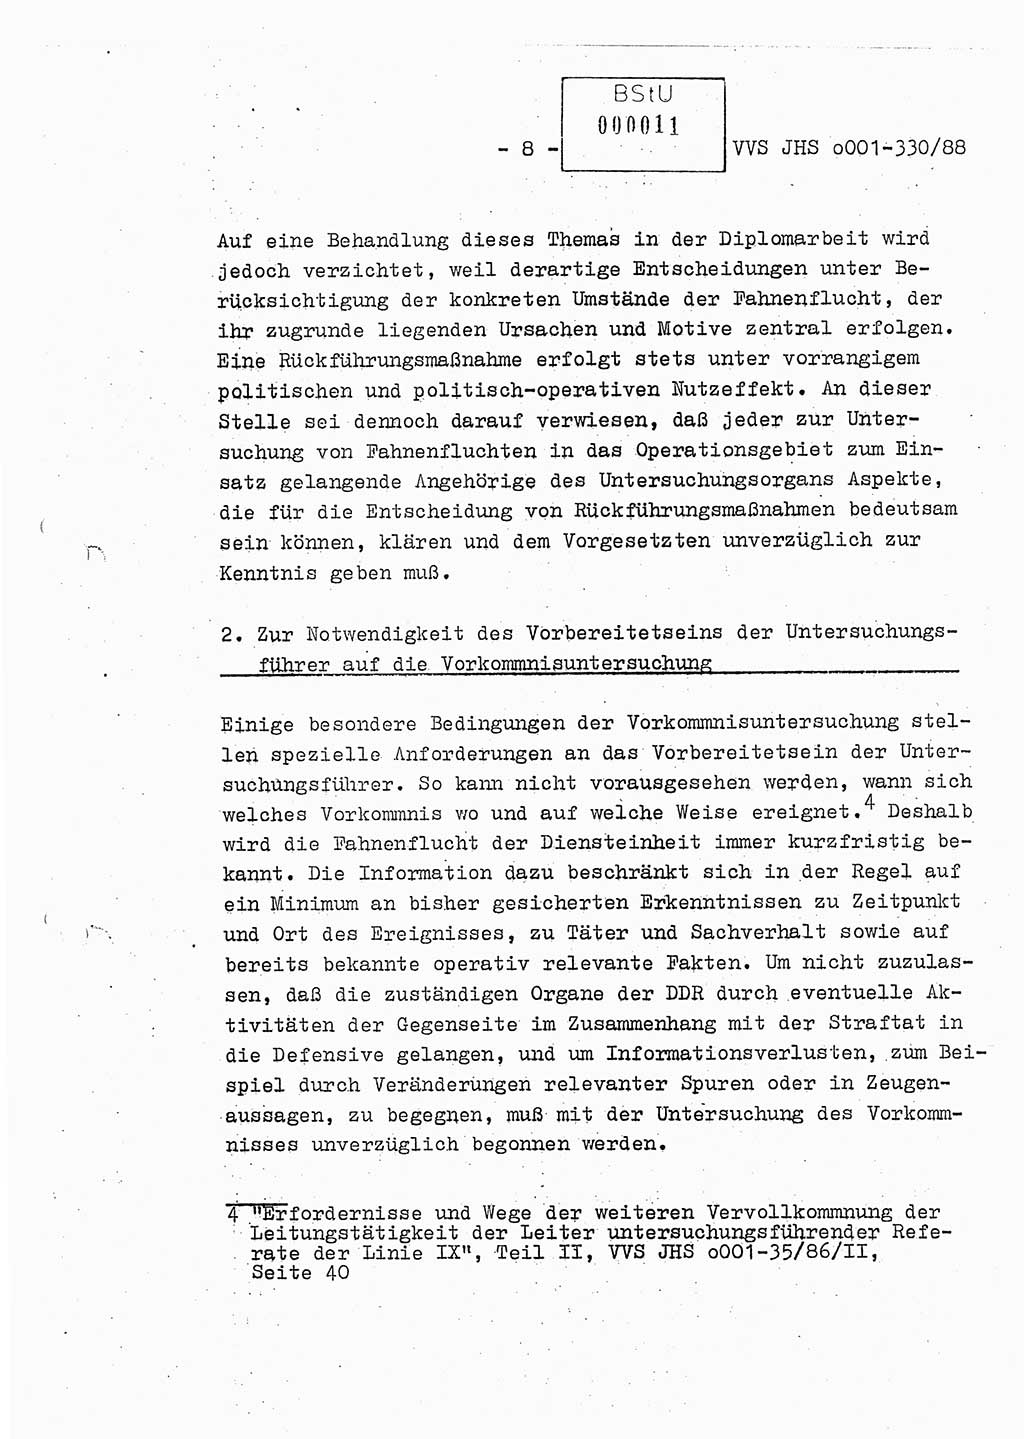 Diplomarbeit Offiziersschüler Thomas Mühle (HA Ⅸ/6), Ministerium für Staatssicherheit (MfS) [Deutsche Demokratische Republik (DDR)], Juristische Hochschule (JHS), Vertrauliche Verschlußsache (VVS) o001-330/88, Potsdam 1988, Seite 8 (Dipl.-Arb. MfS DDR JHS VVS o001-330/88 1988, S. 8)